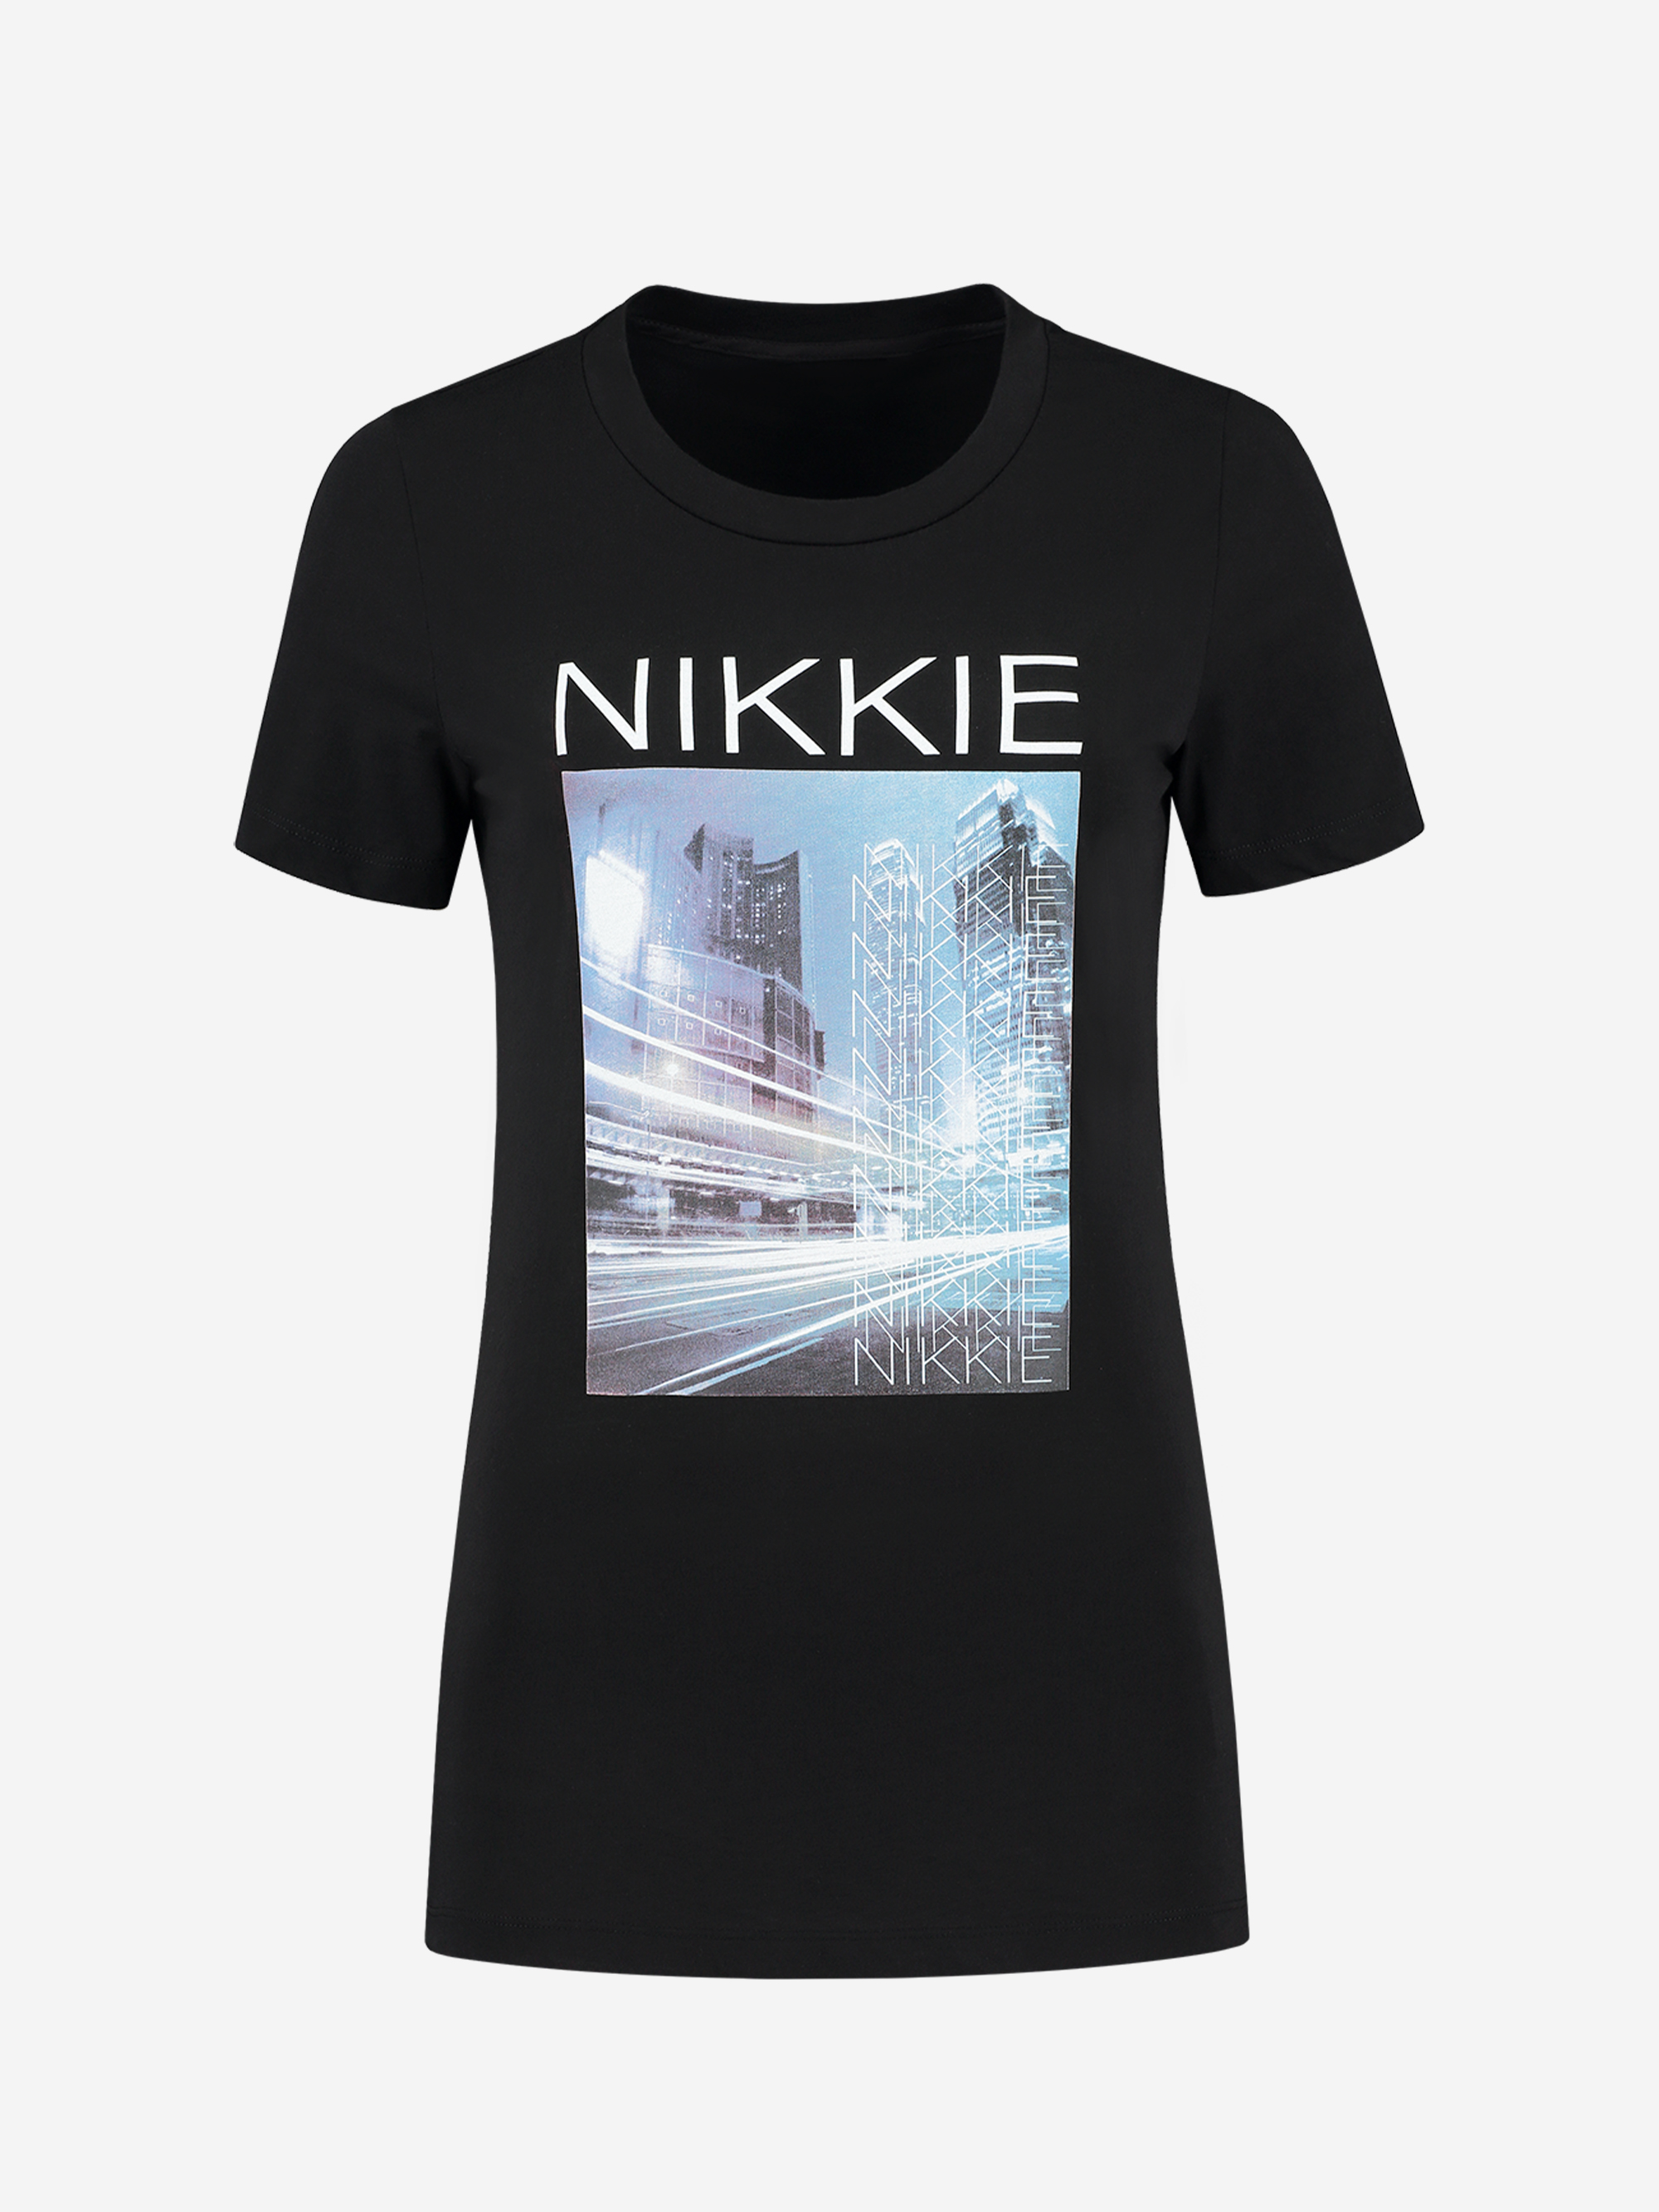 NIKKIE Blue Street T-Shirt